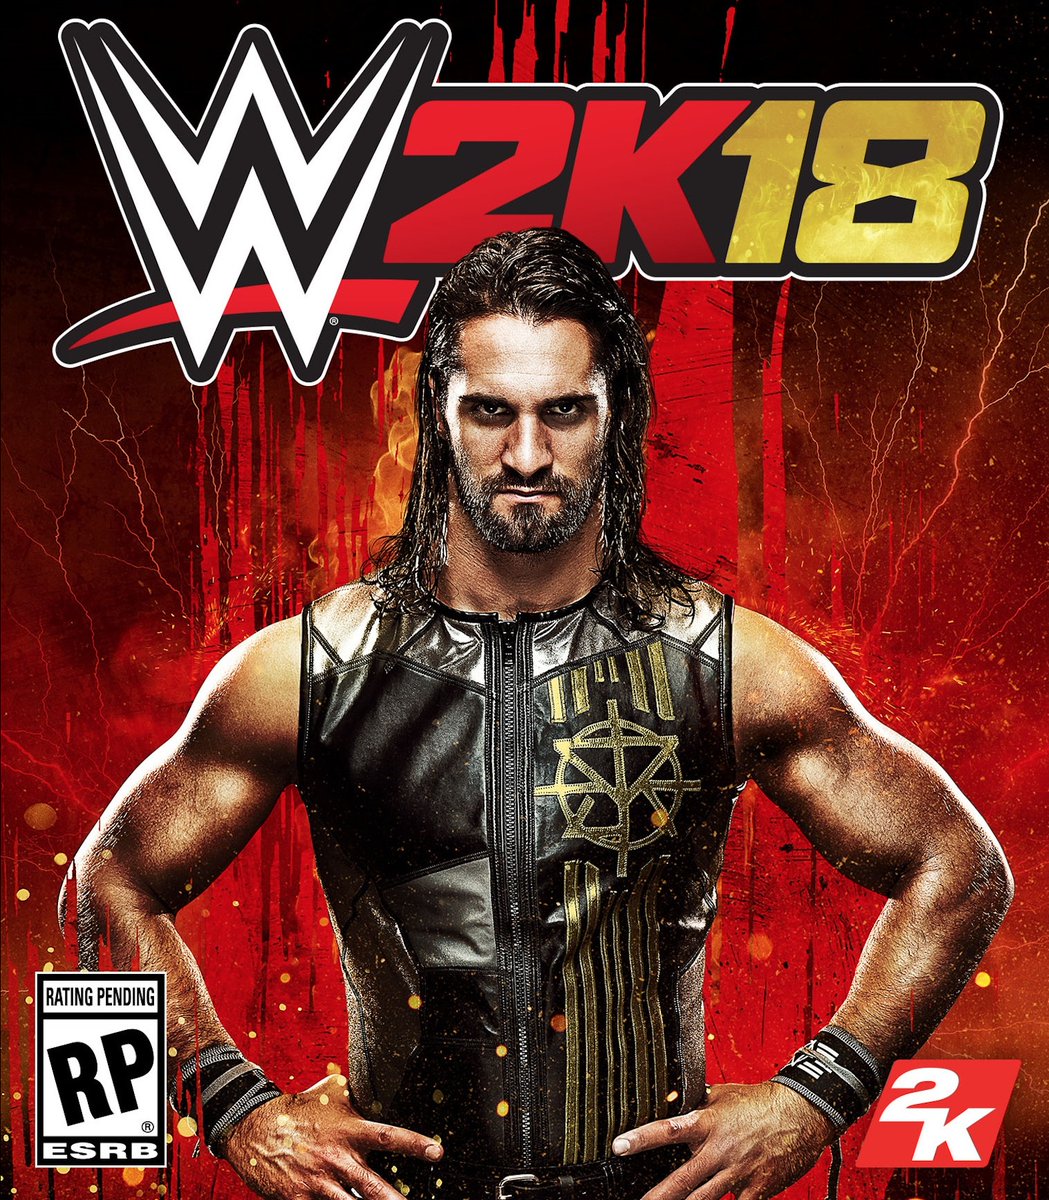 İlk WWE 2K18 videosu yayımlandı ve oyun için ilk detaylar verildi